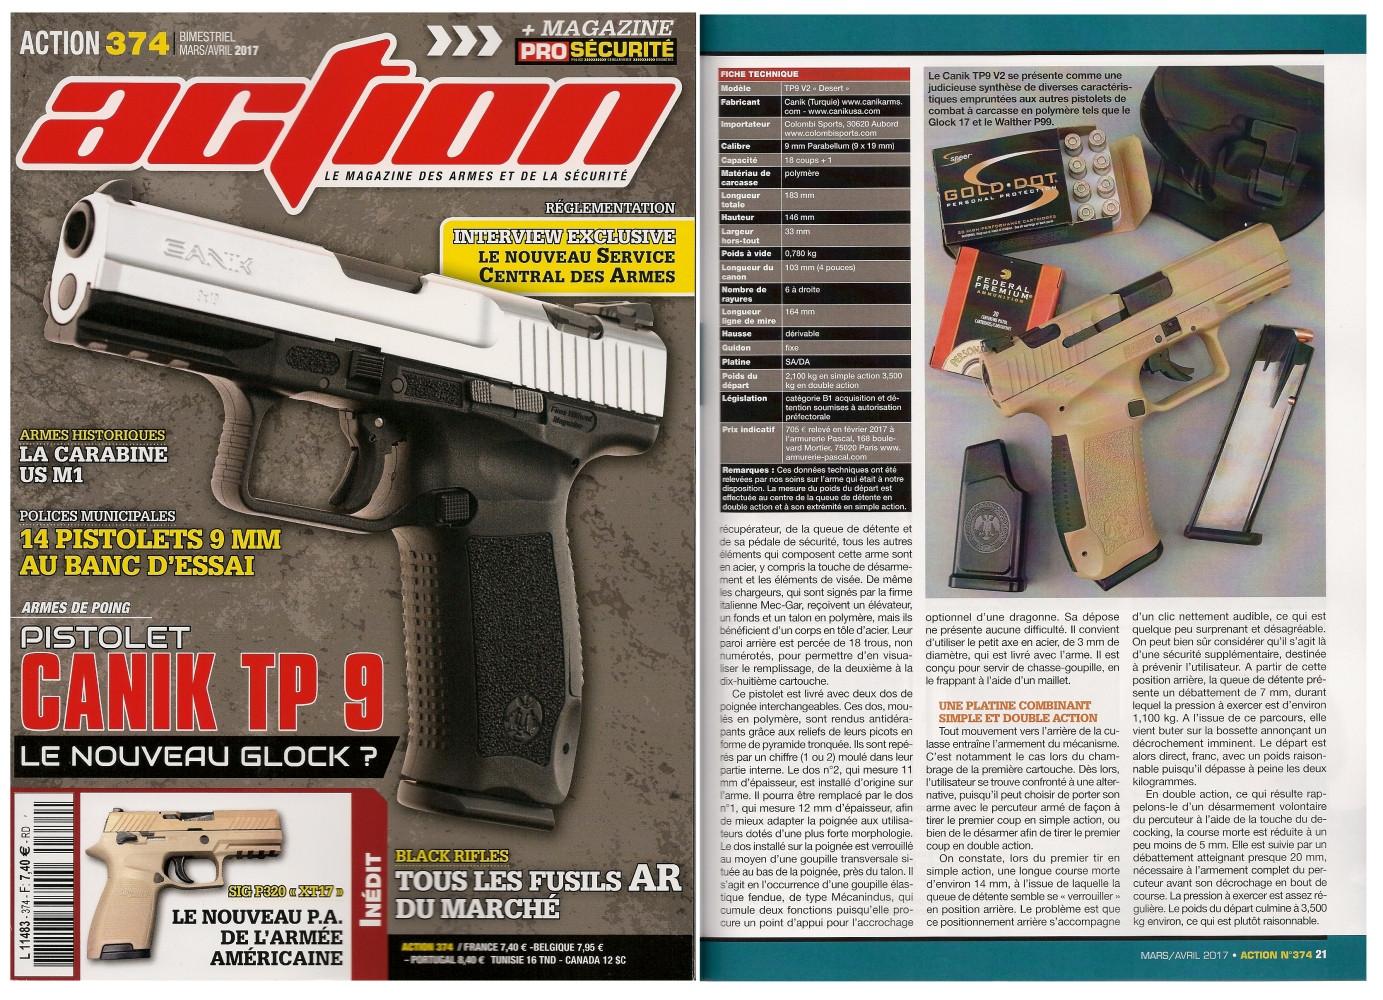 Le banc d'essai du pistolet Canik TP9 V2 a été publié sur 6 pages dans le magazine Action n° 374 (mars/avril 2017). 